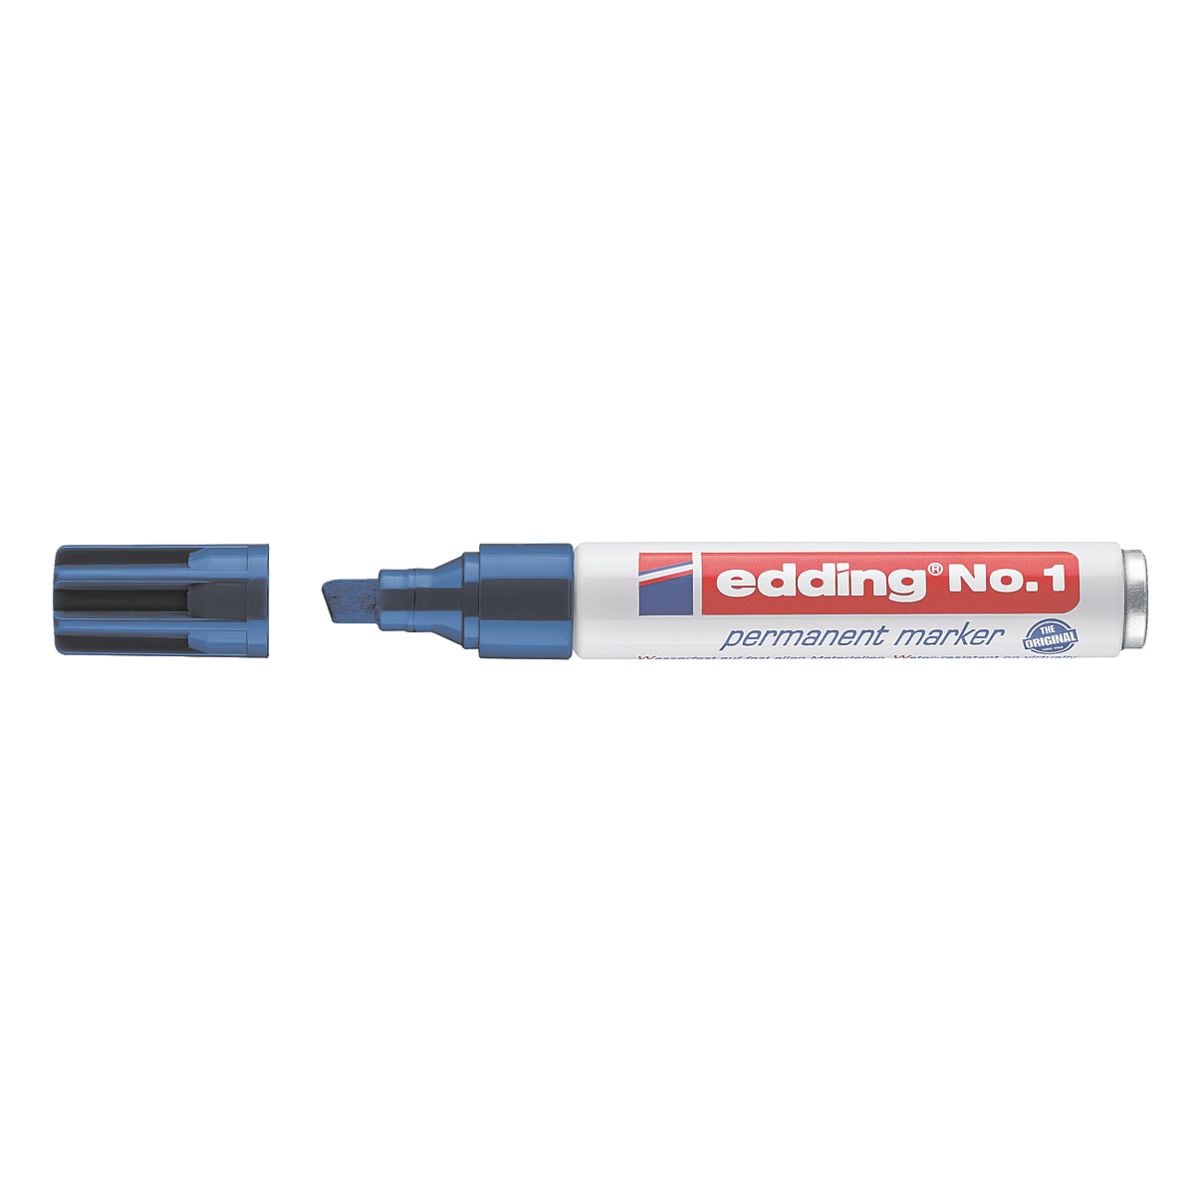 edding marqueur indlbile n1 - pointe biseaute, Epaisseur de trait 1,0  - 5,0 mm (XB)